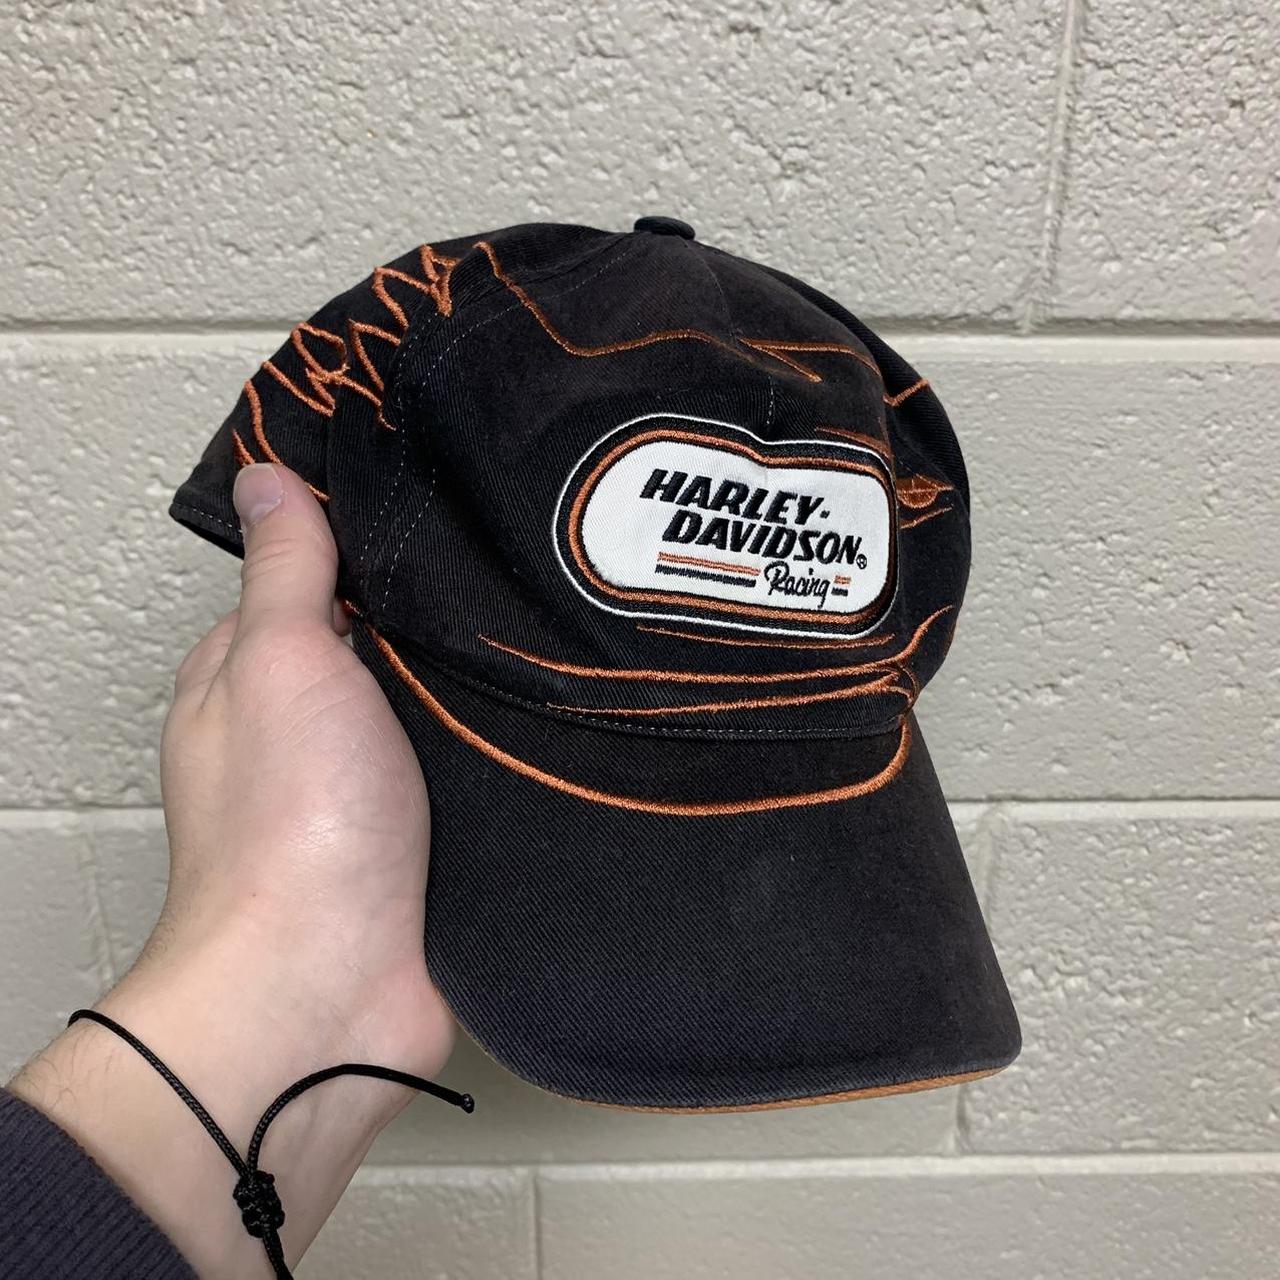 Harley Davidson Men's Black and Orange Hat